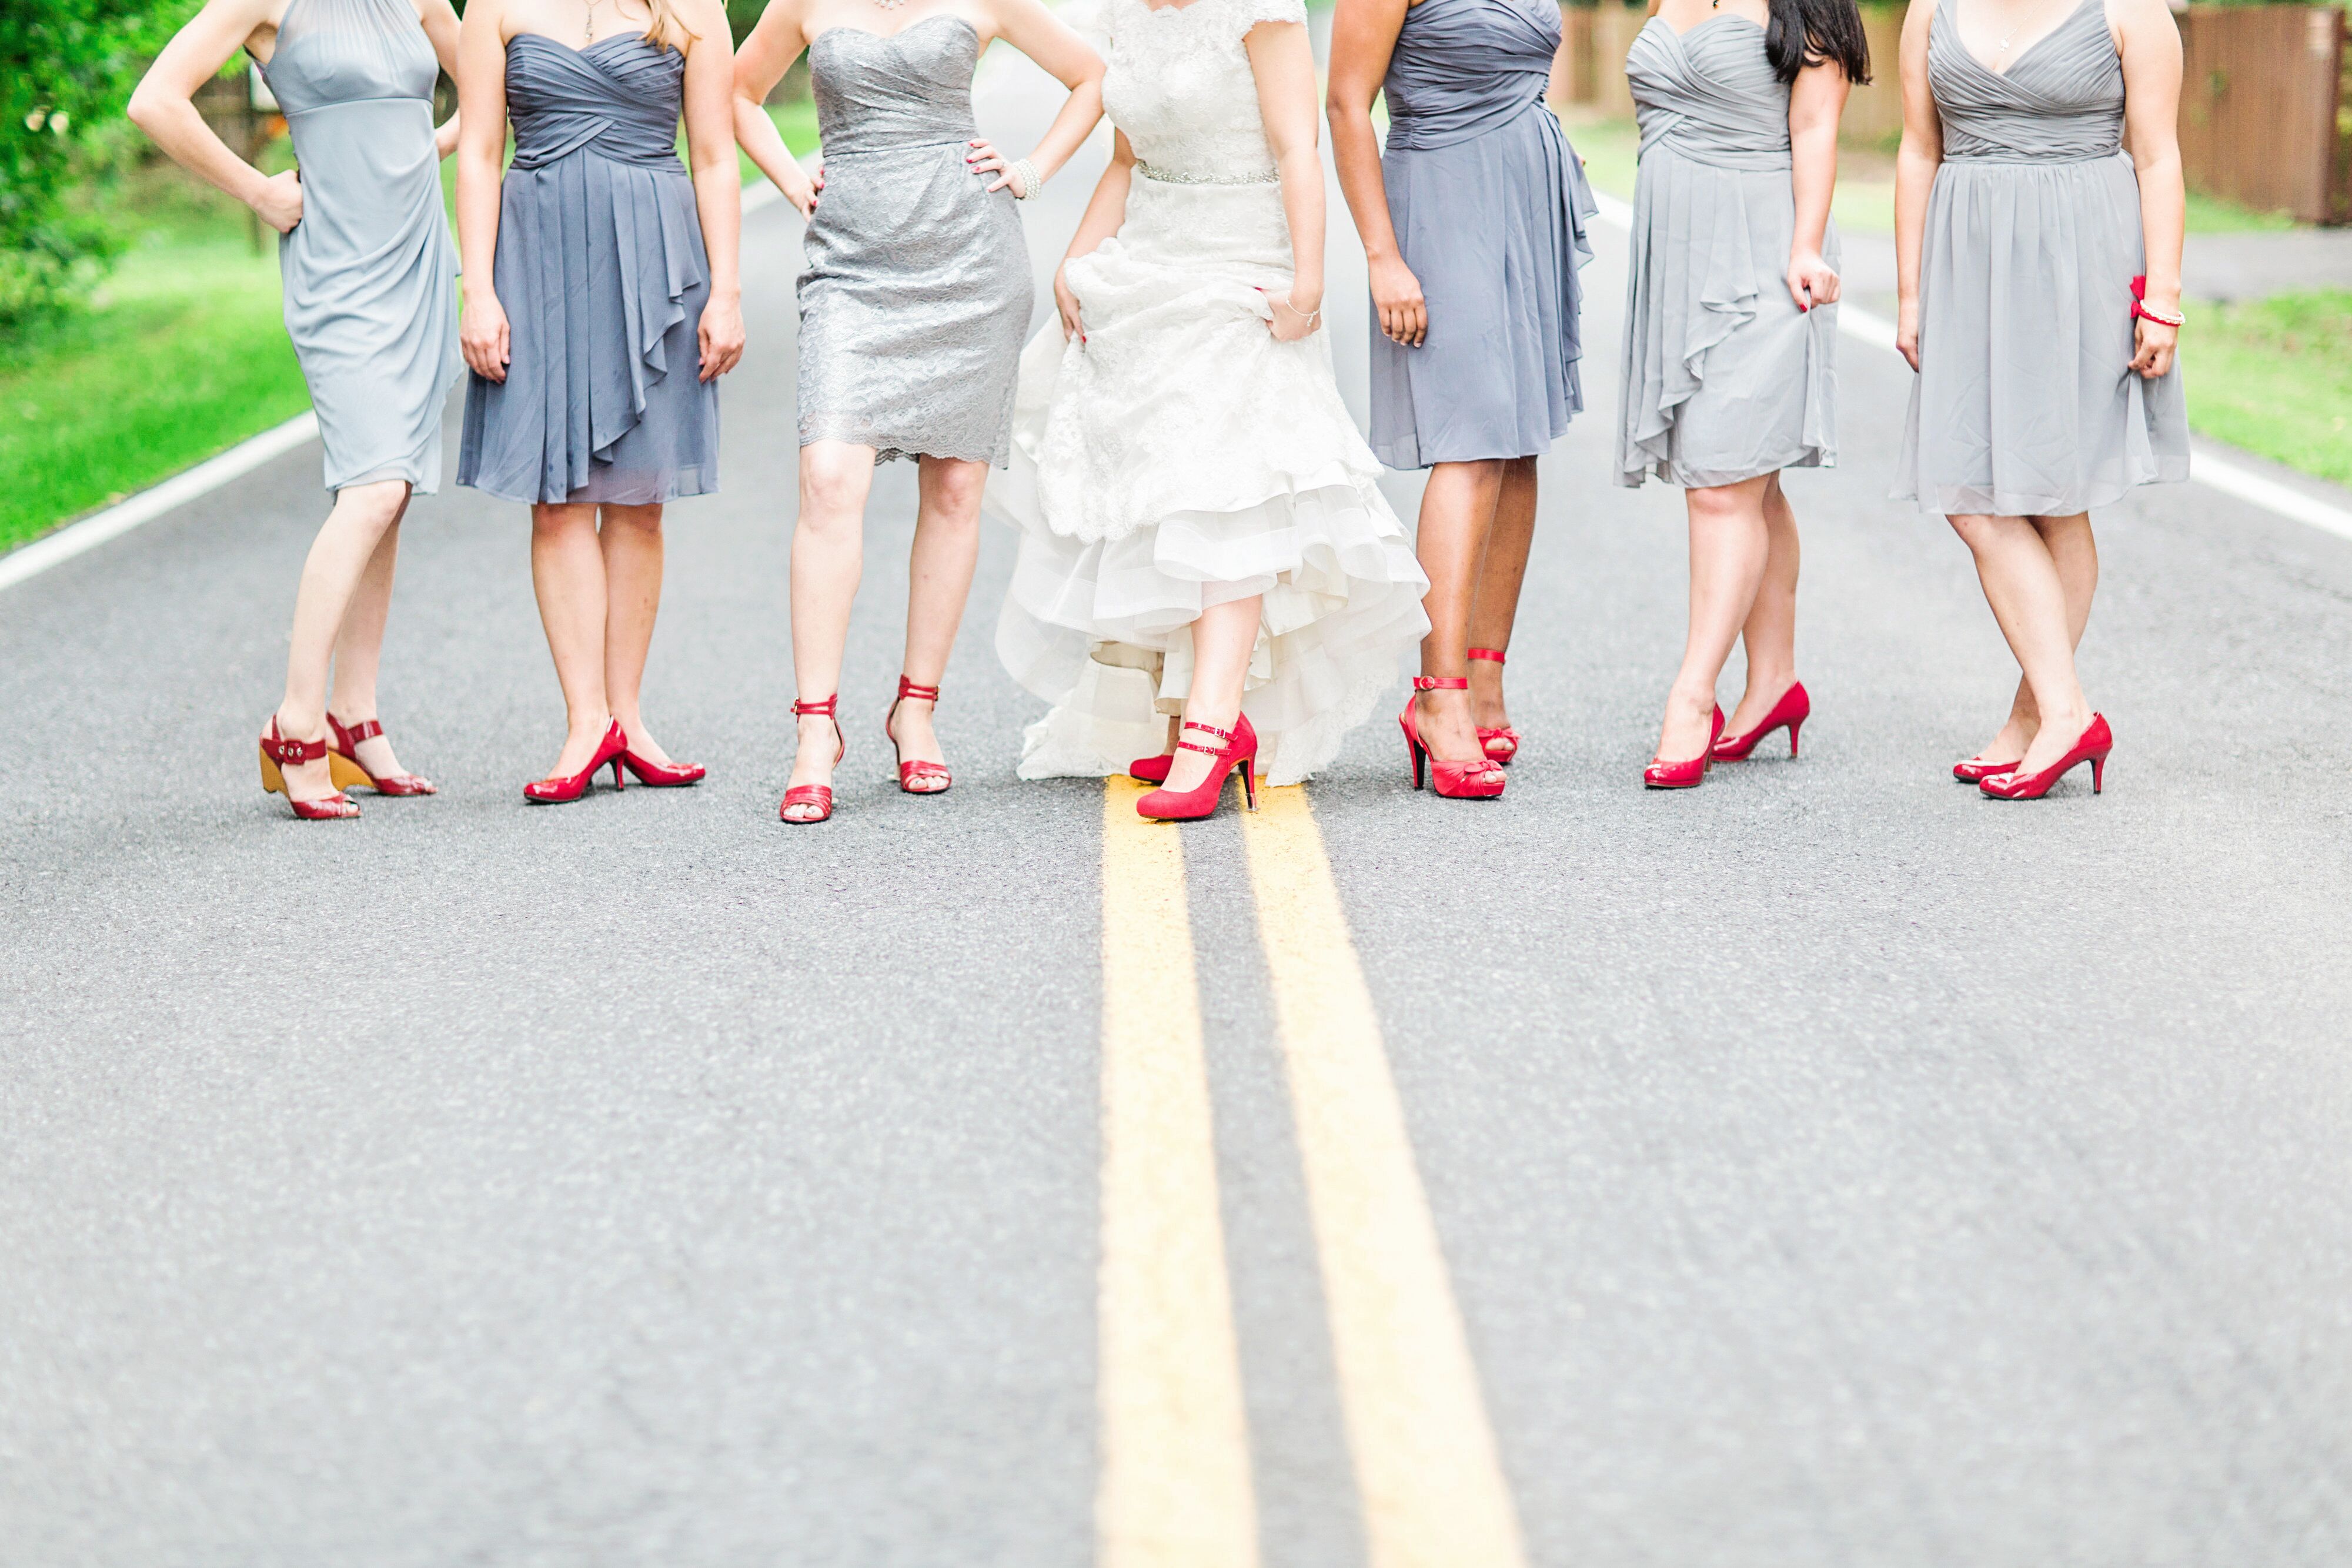 gray bridesmaid shoes